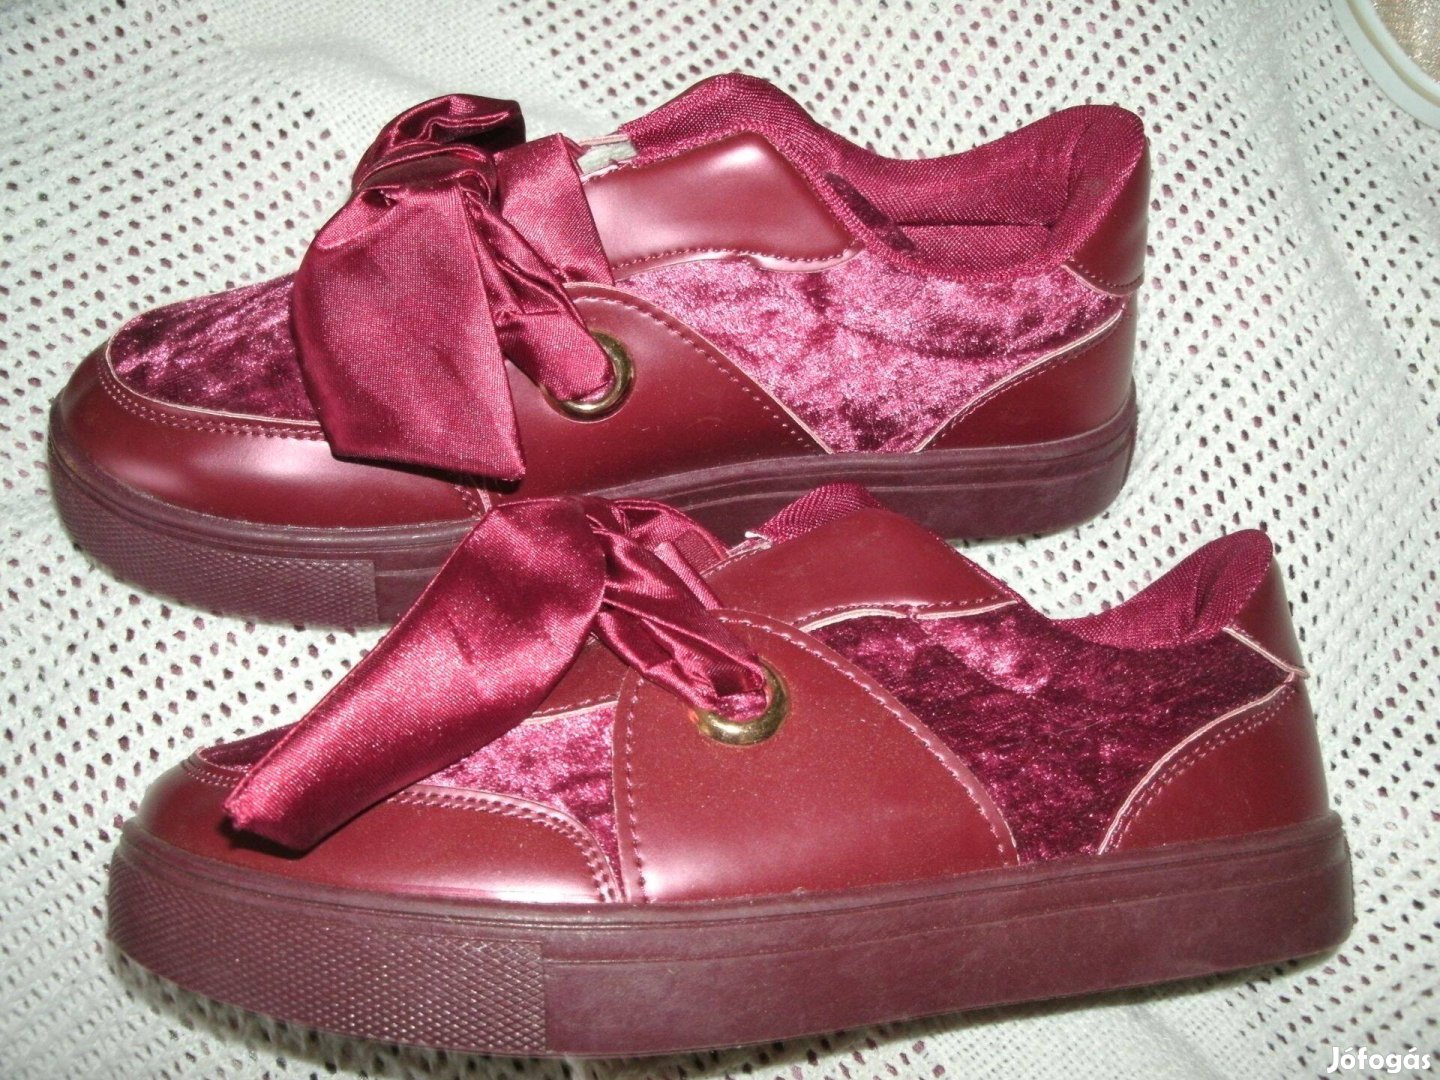 Bordó cipő Új 36-os belső talphossza:23 cm